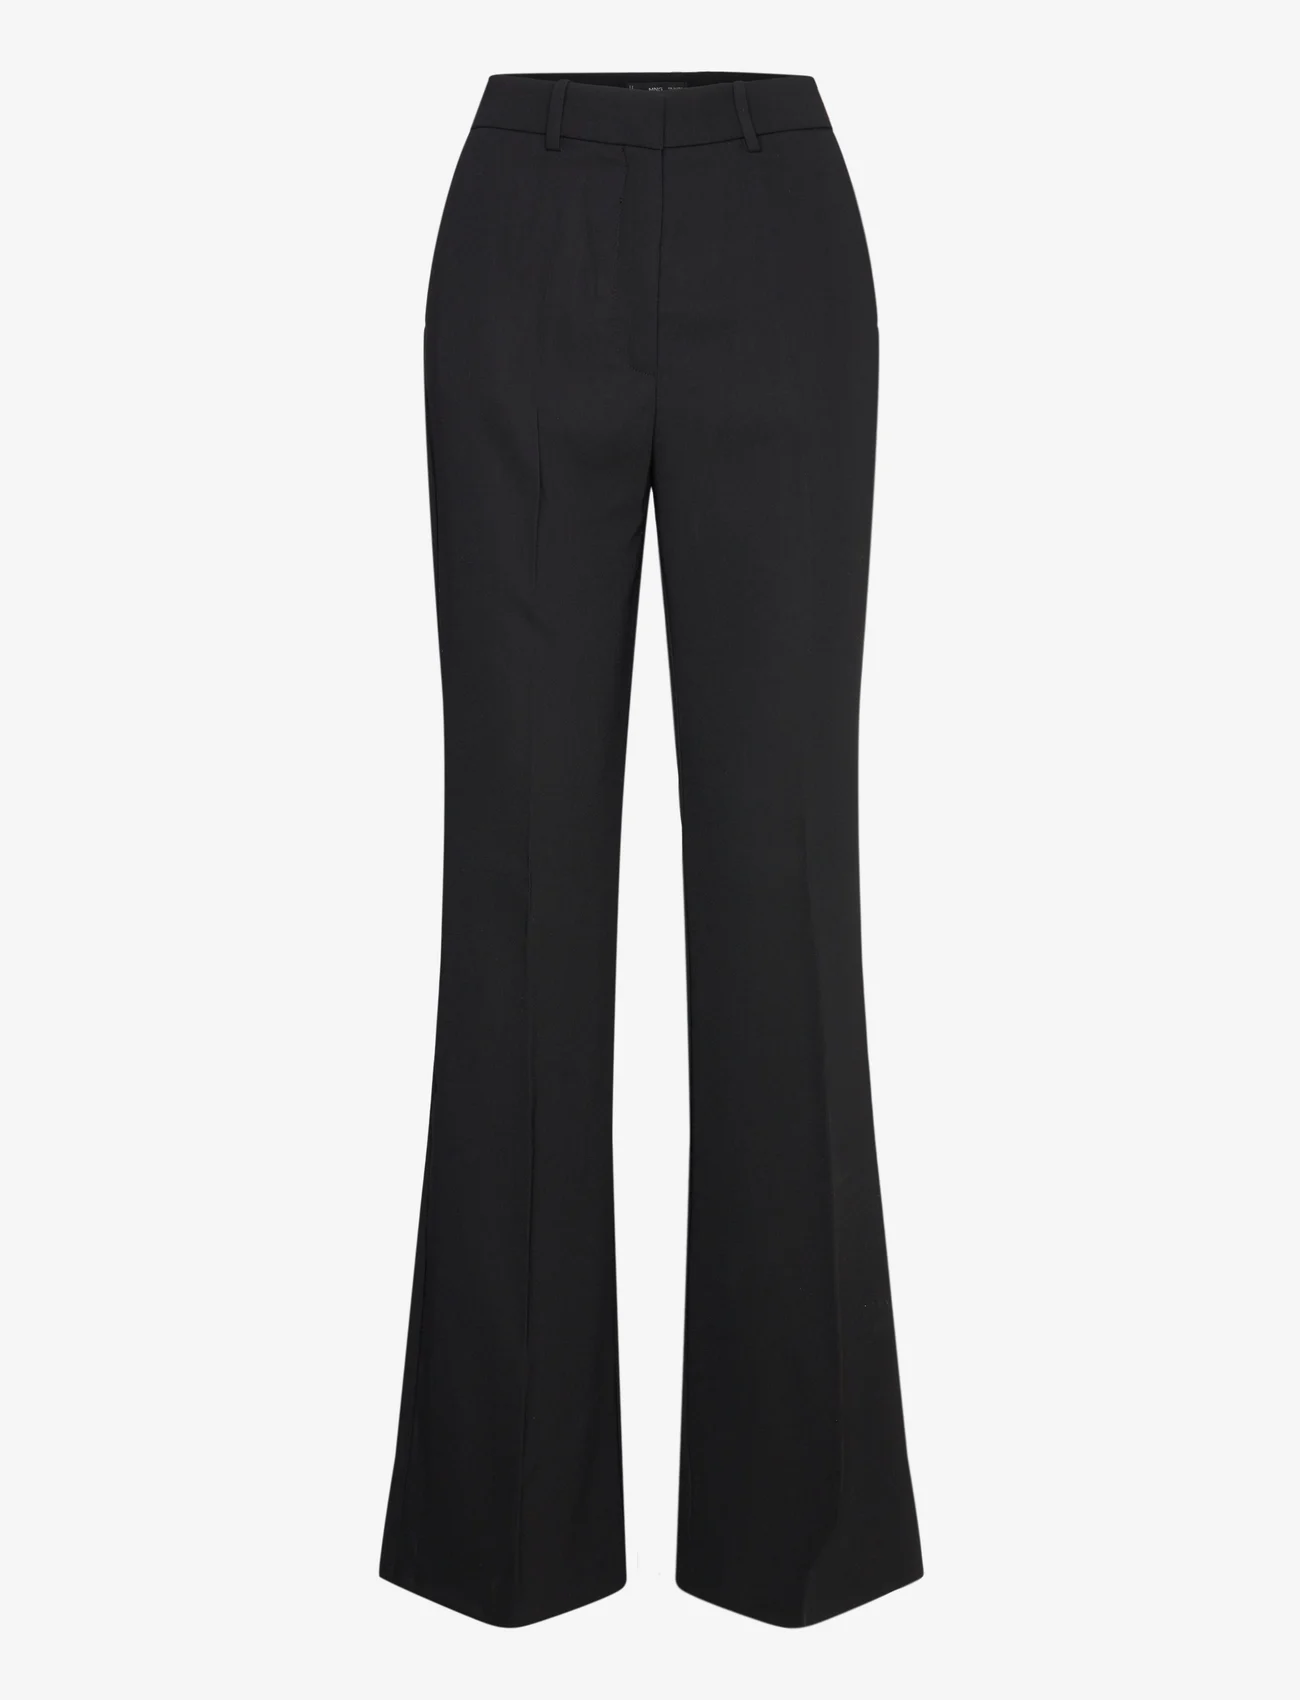 Mango - Flared trouser suit - habitbukser - black - 0